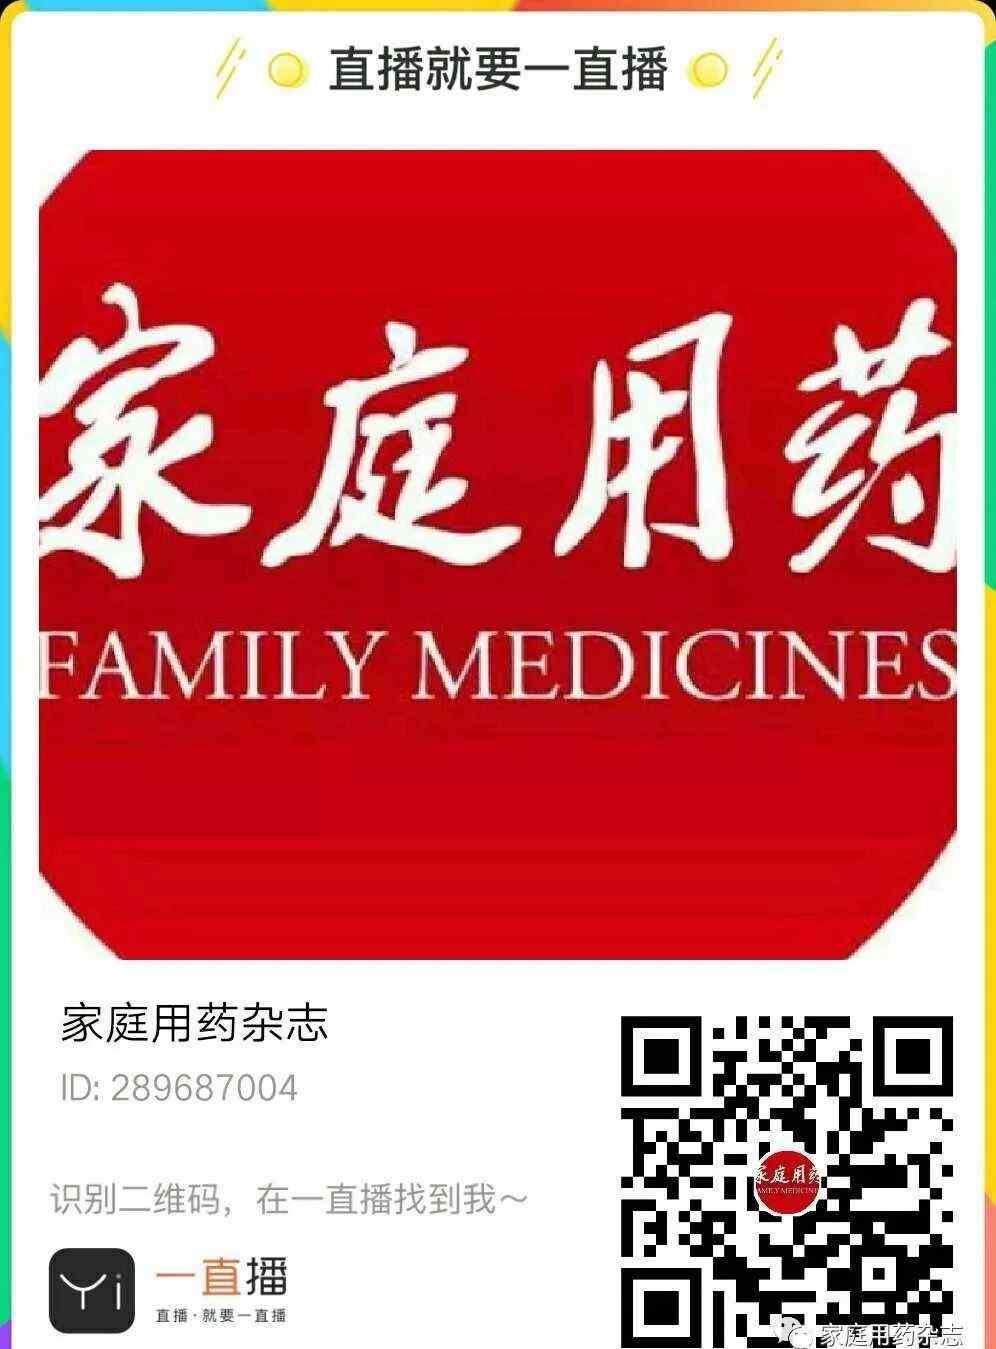 上海市中医医院 上海市中医医院药剂科主任正在直播……